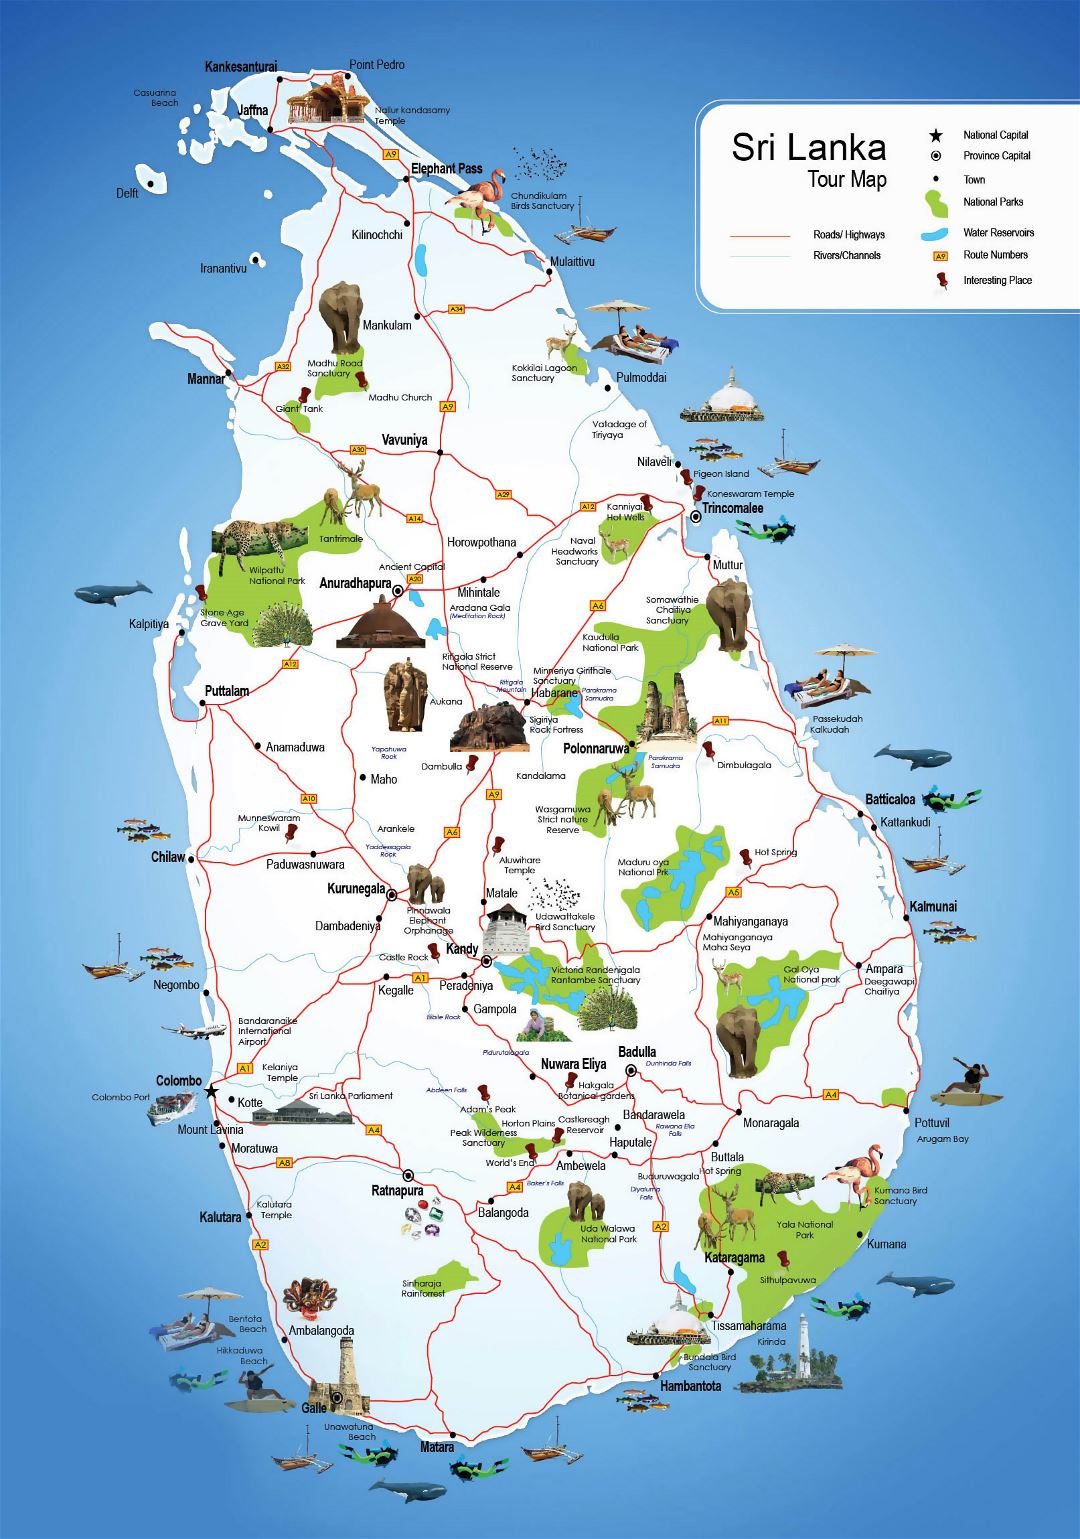 Grande detallado mapa turístico de Sri Lanka